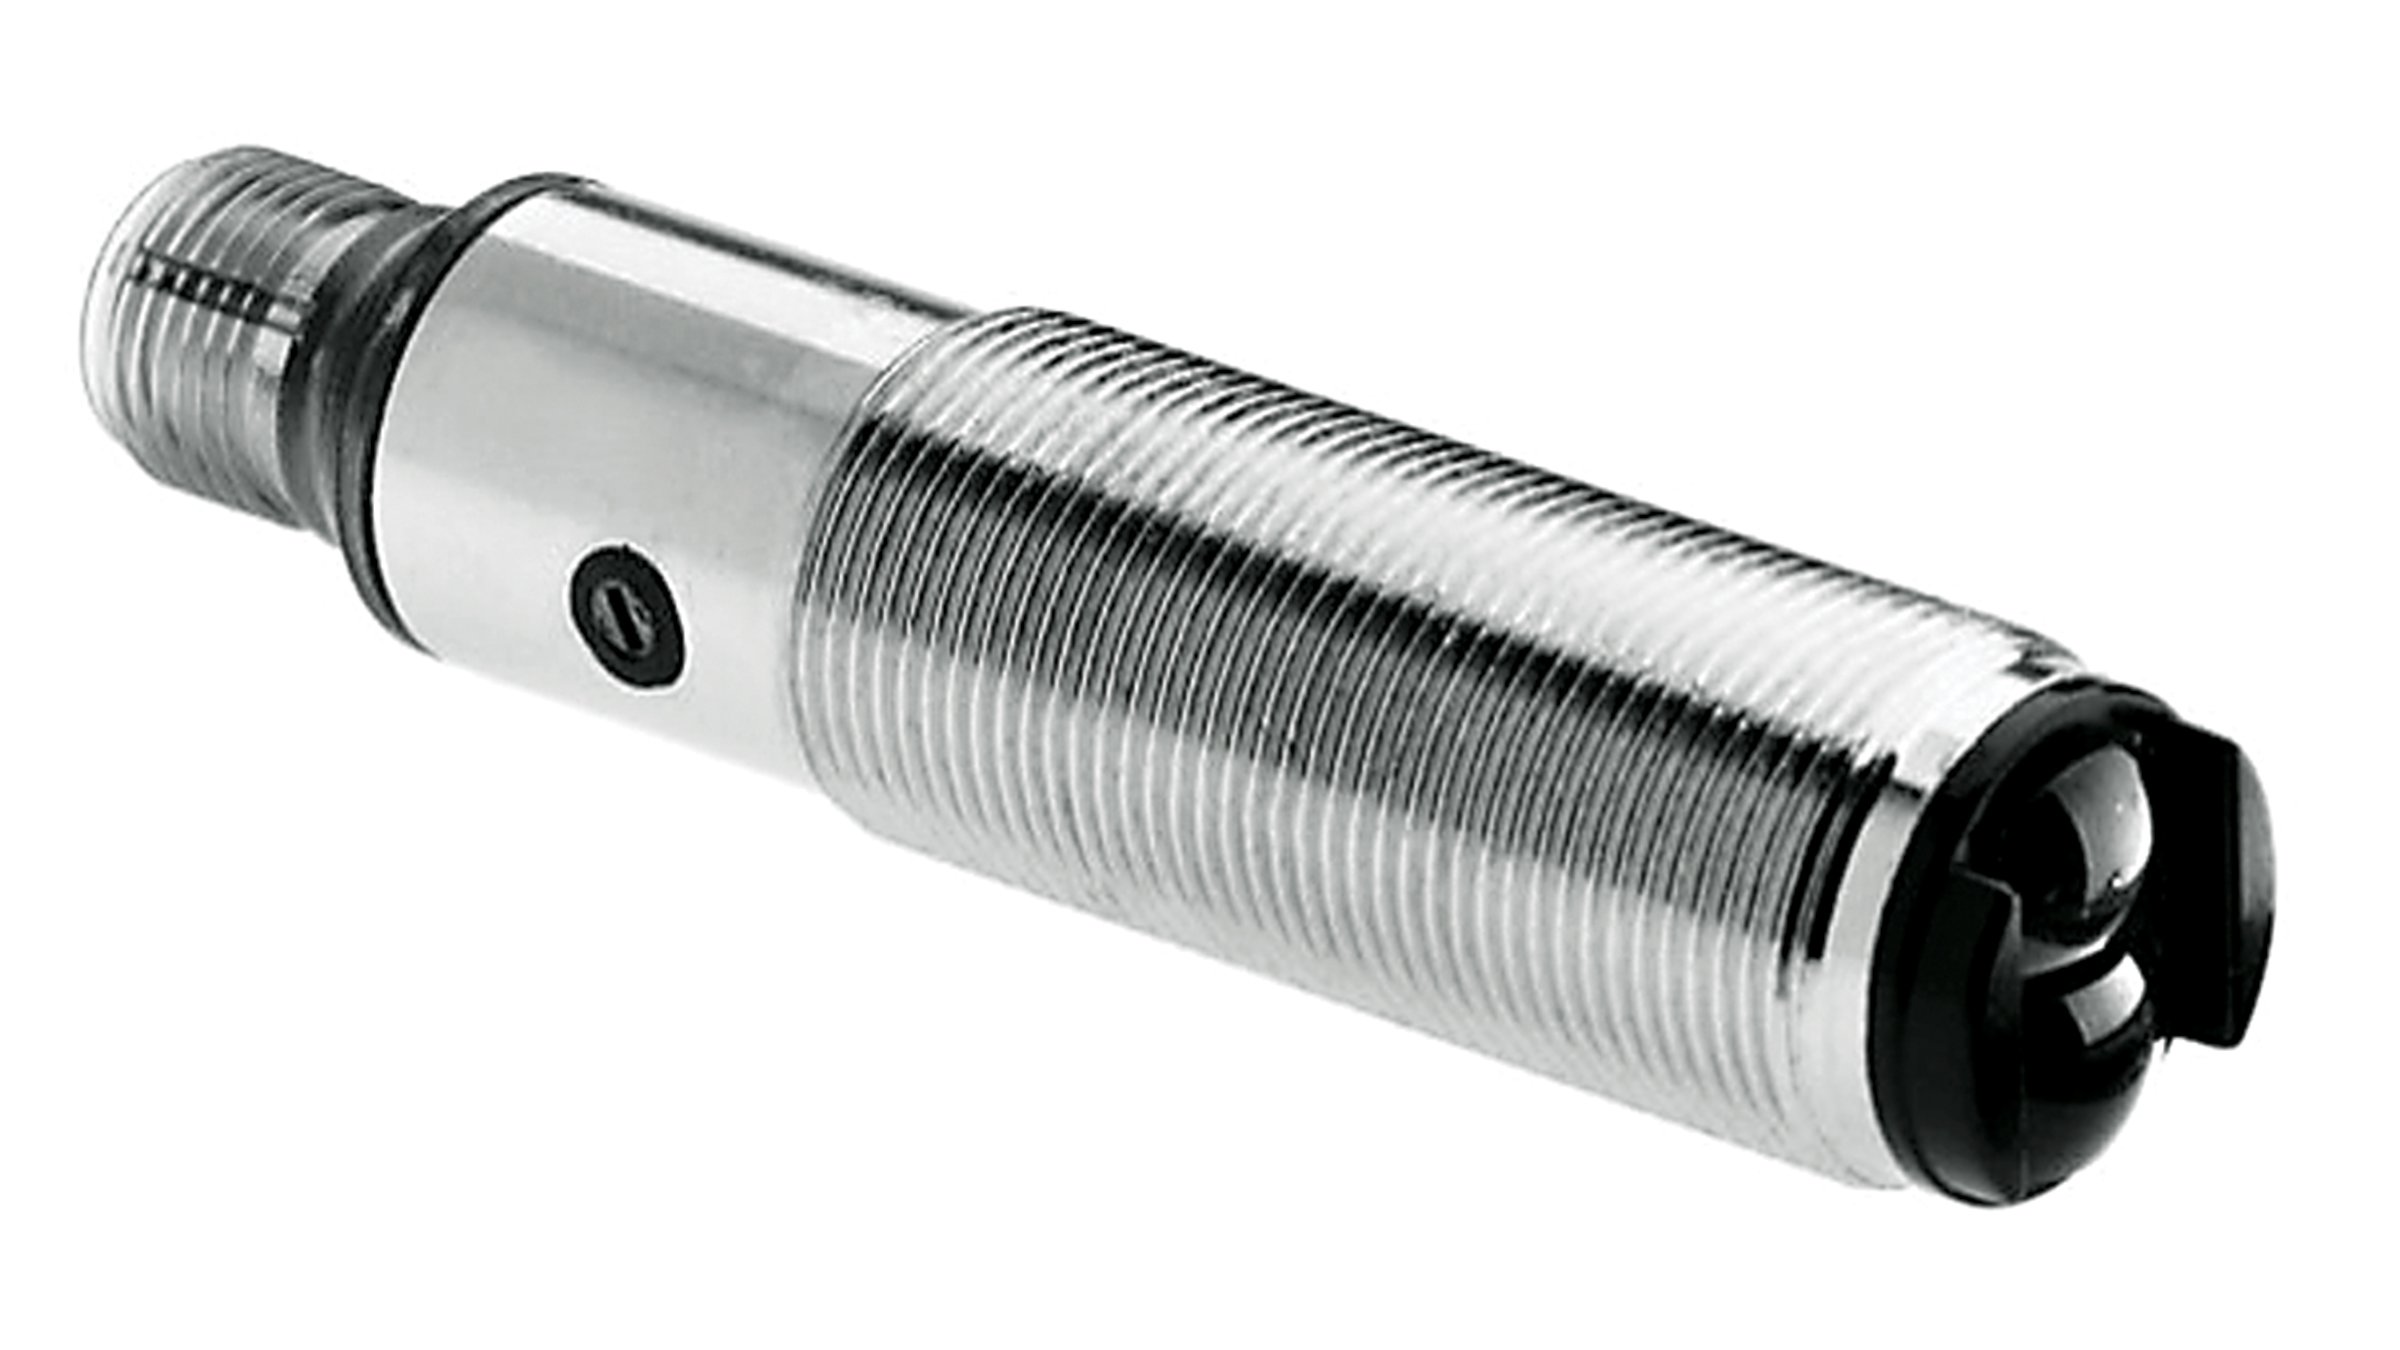 Allen-Bradley threaded stainless steel cylindrical sensor.